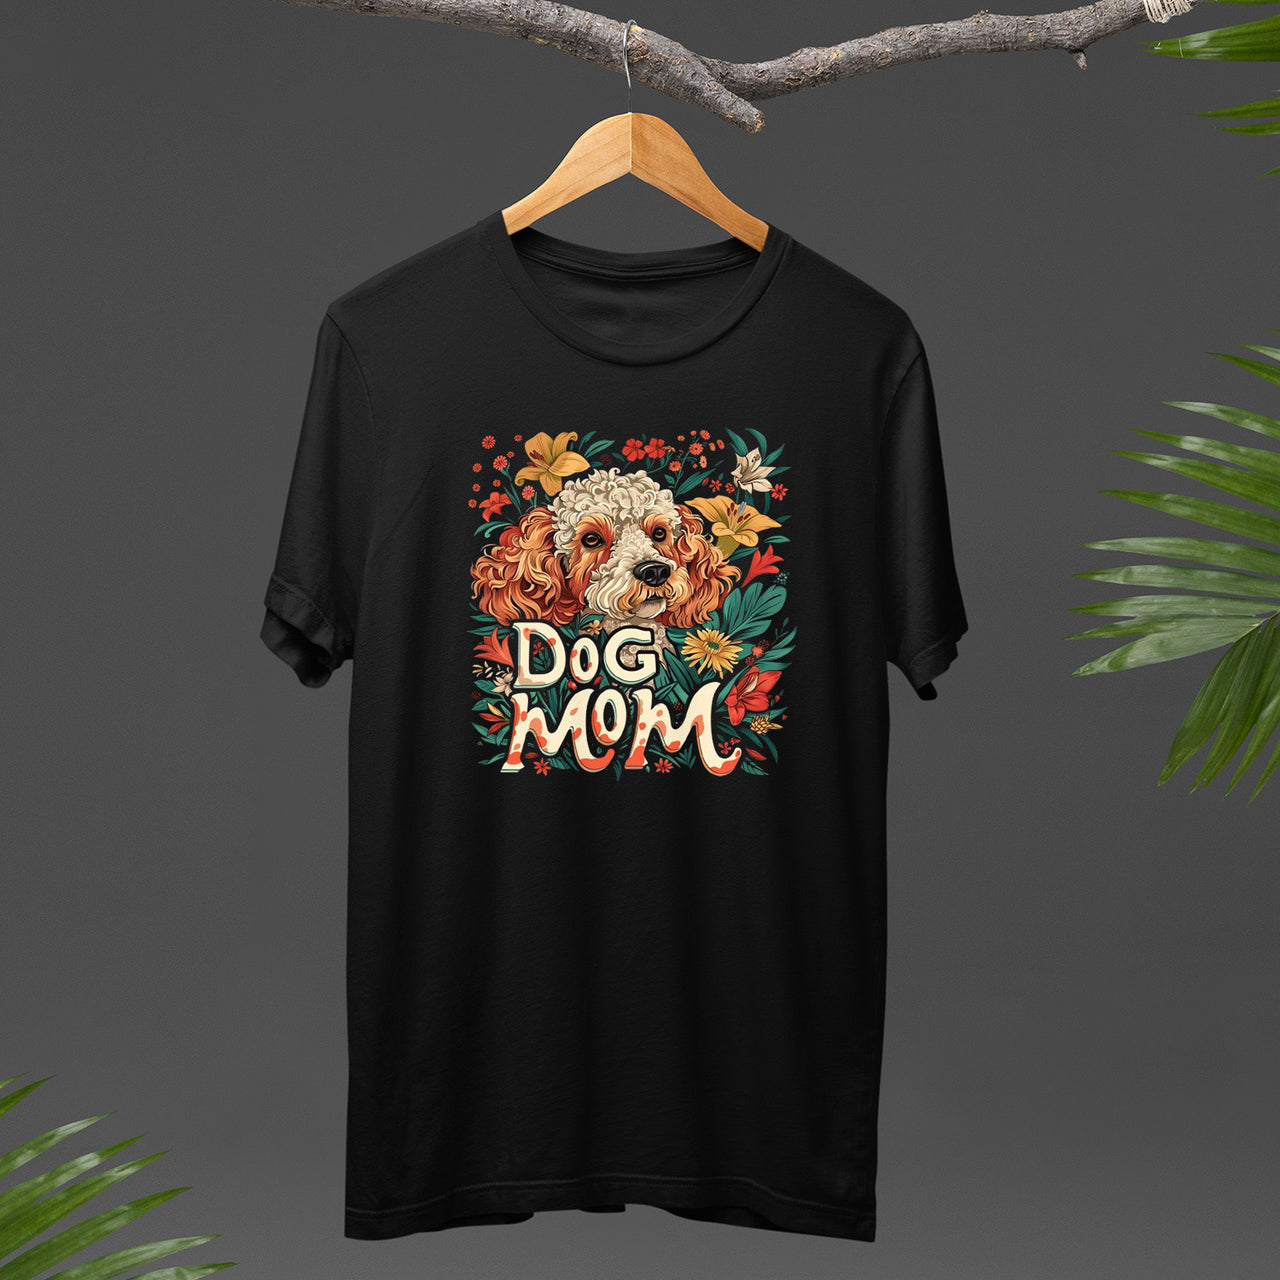 Poodle Dog T-shirt, Pet Lover Shirt, Dog Lover Shirt, Dog Mom T-Shirt, Dog Owner Shirt, Gift For Dog Mom, Funny Dog Shirts, Women Dog T-Shirt, Mother's Day Gift, Dog Lover Wife Gifts, Dog Shirt